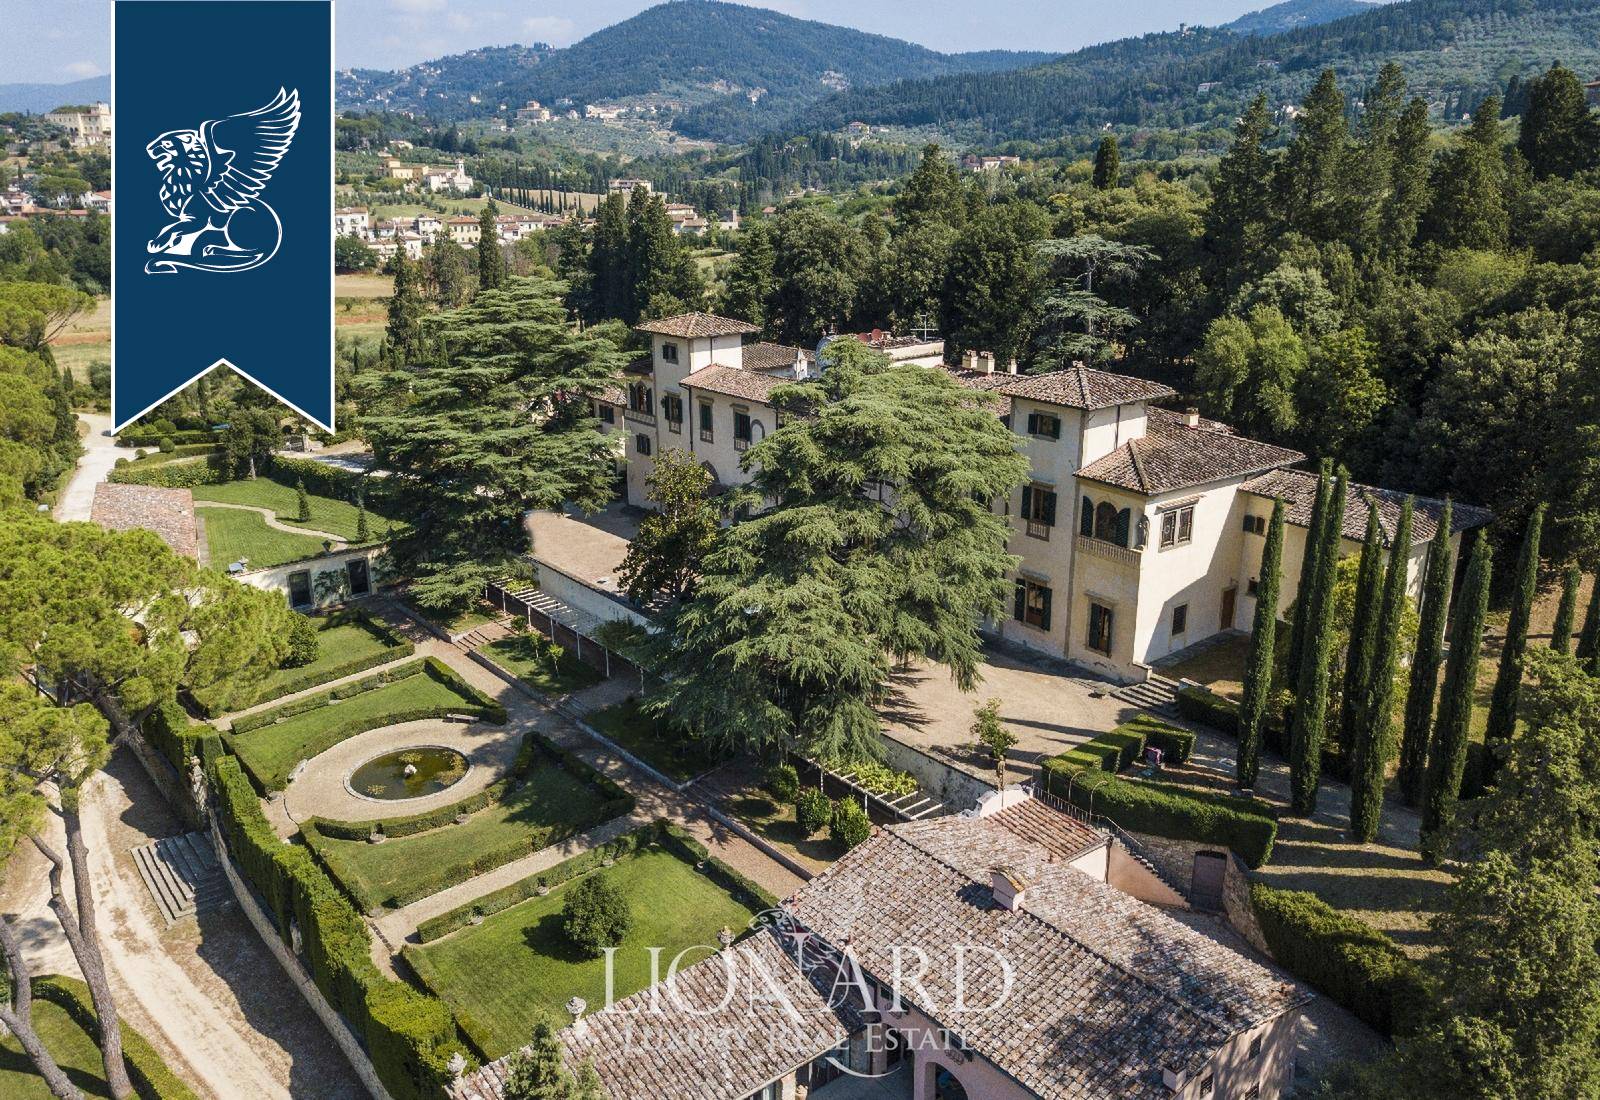 Villa in Vendita a Firenze: 0 locali, 3000 mq - Foto 3